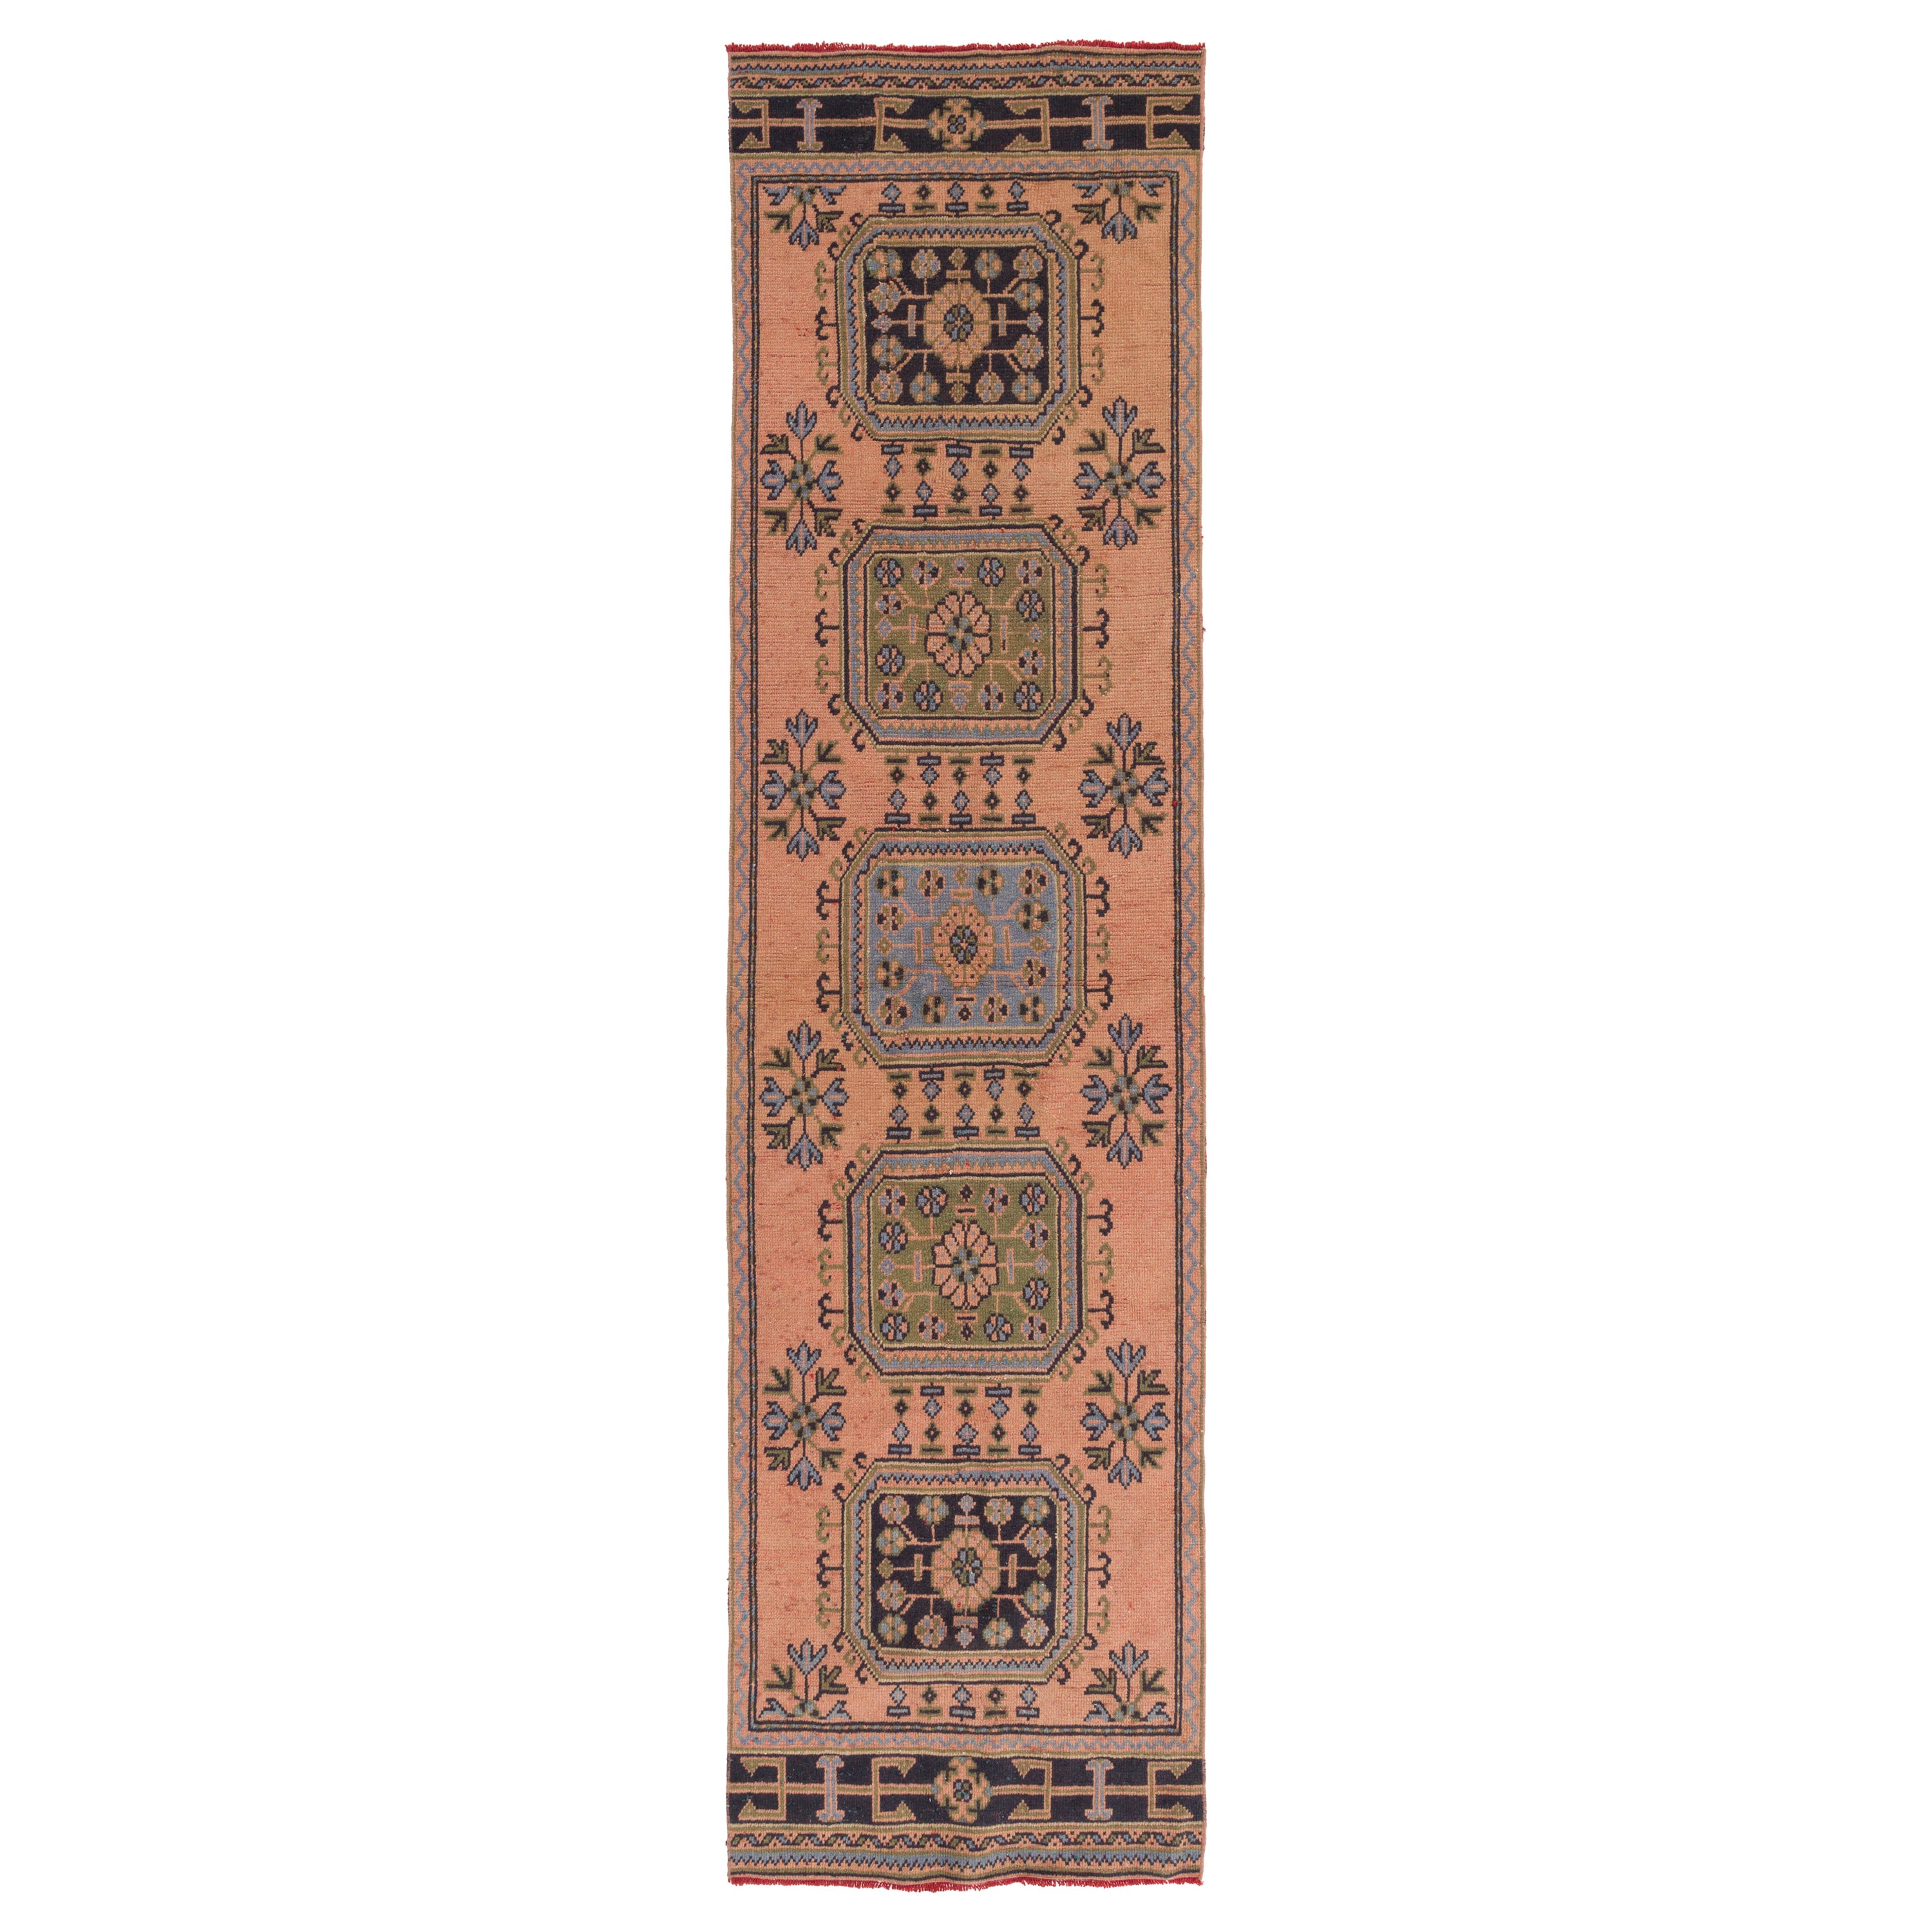 3x11.7 Ft Vintage Anatolian Runner Rug for Hallway. Handmade Corridor Carpet For Sale